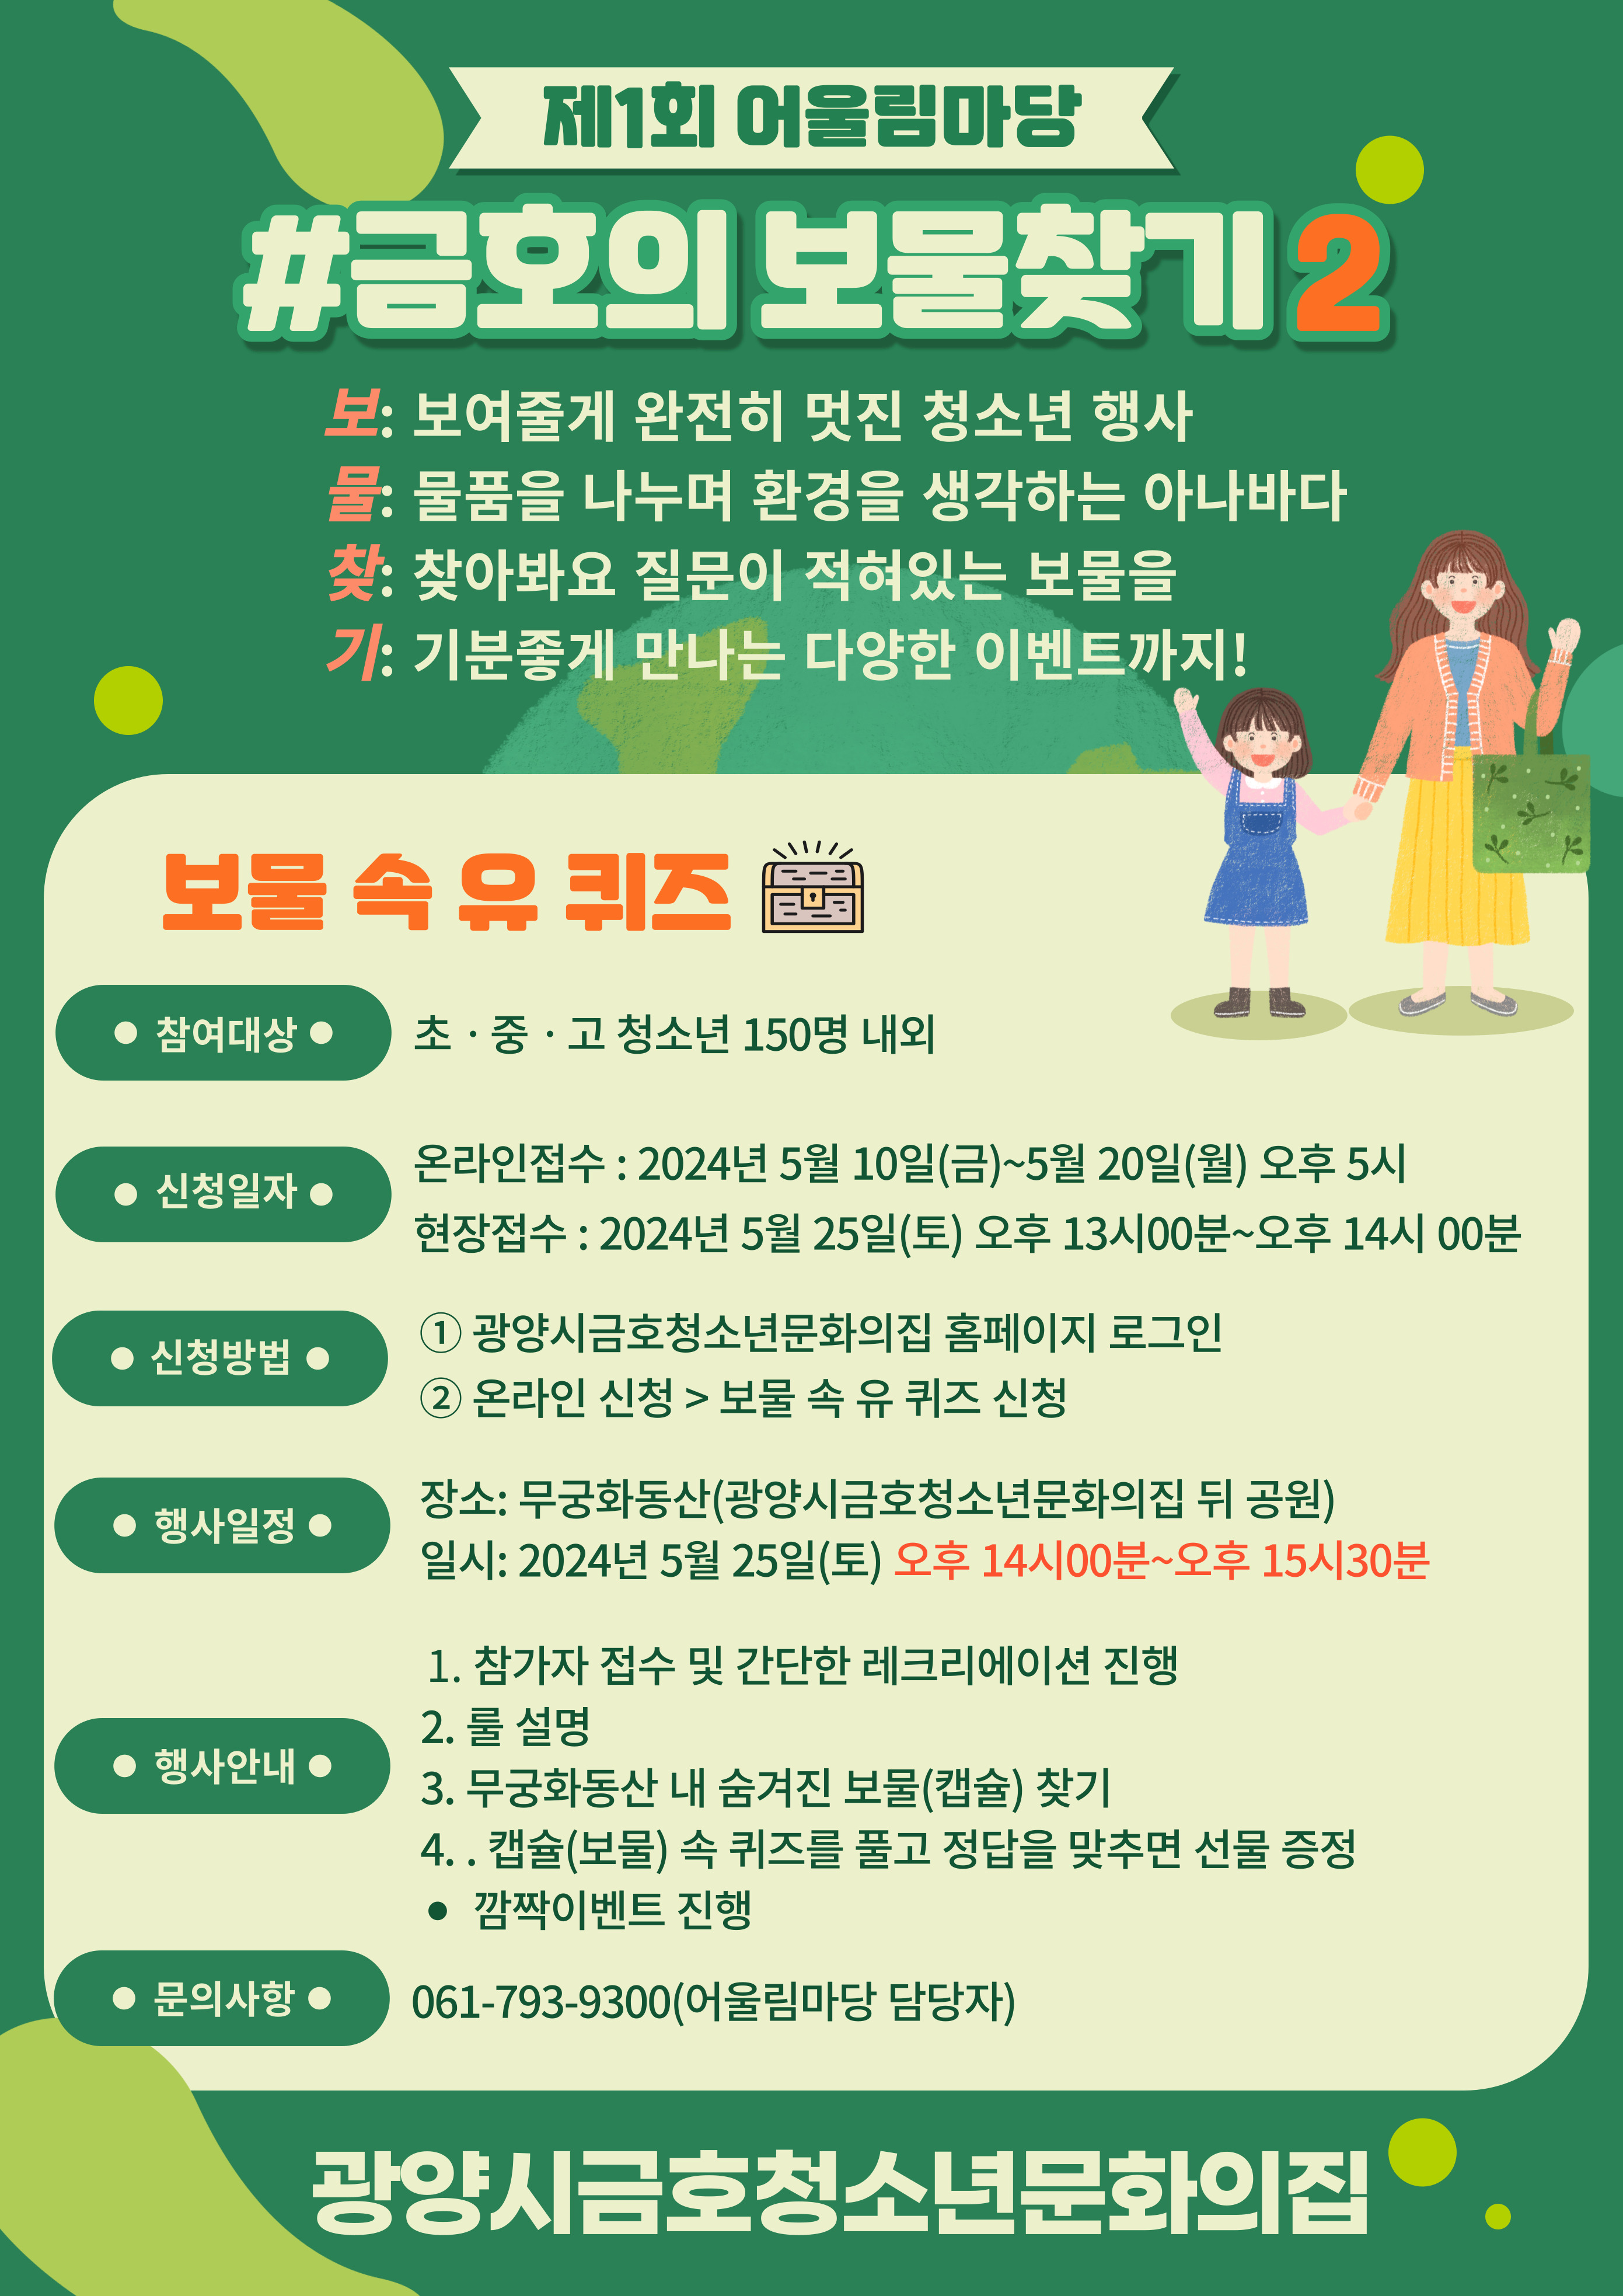 광양시금호청소년문화의집 제1회 어울림마당 '금호의 보물찾기' 진행